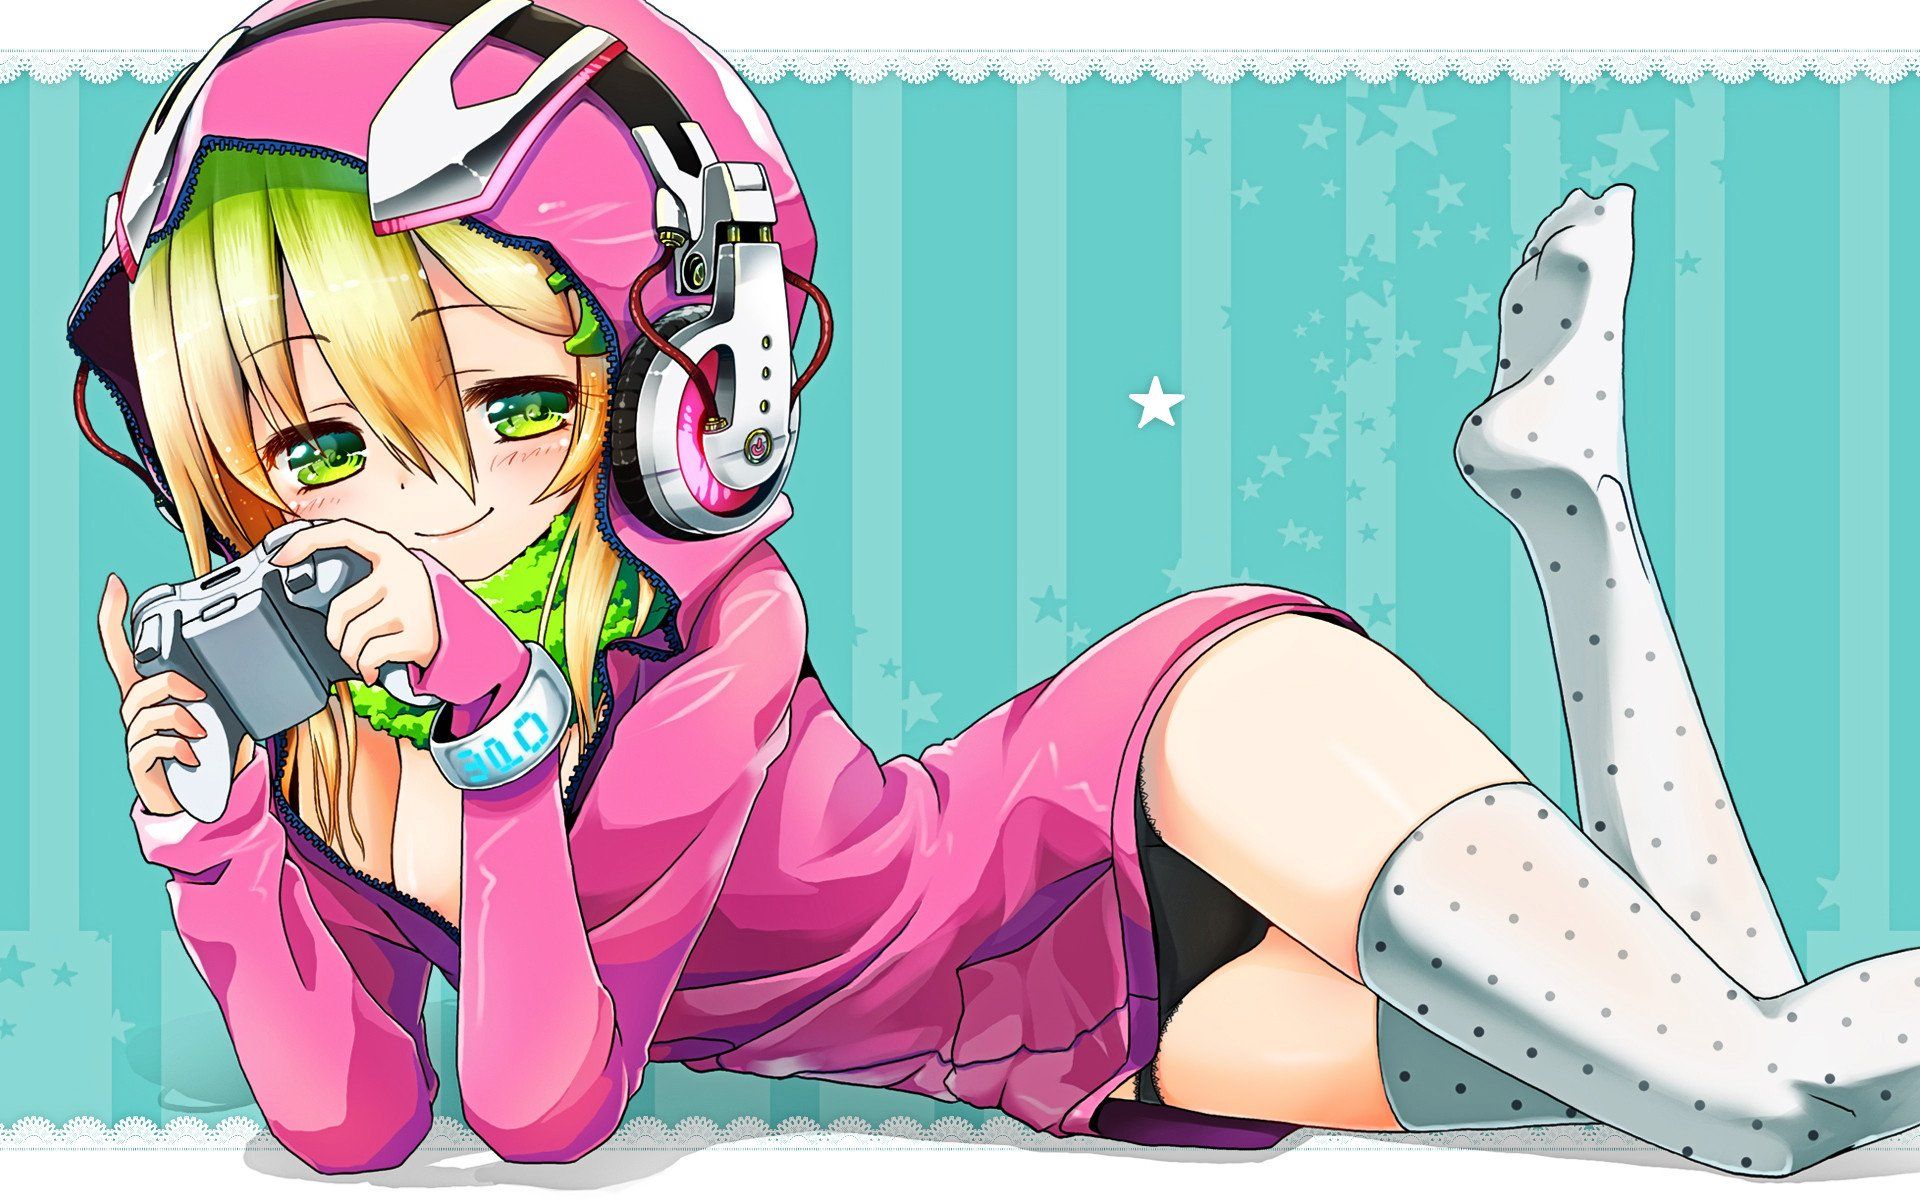 Anime Gamer Girl Wallpaper